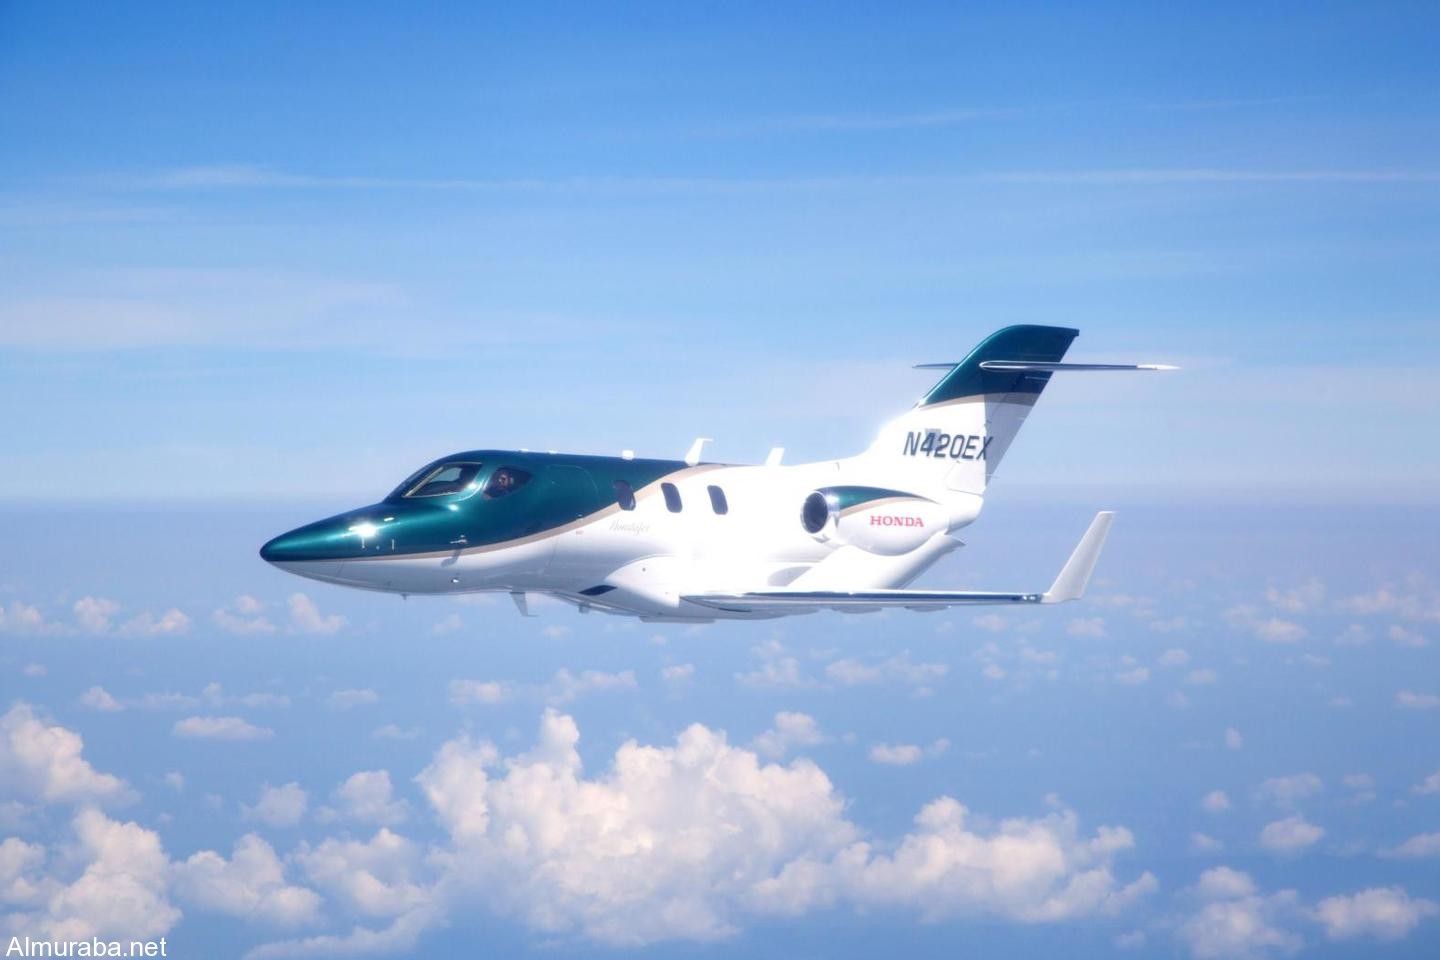 شركة "هوندا" تسلم أولى طائراتها الخاصة "هوندا جيت"بعد تطوير دام عشرين عاماً HondaJet 2